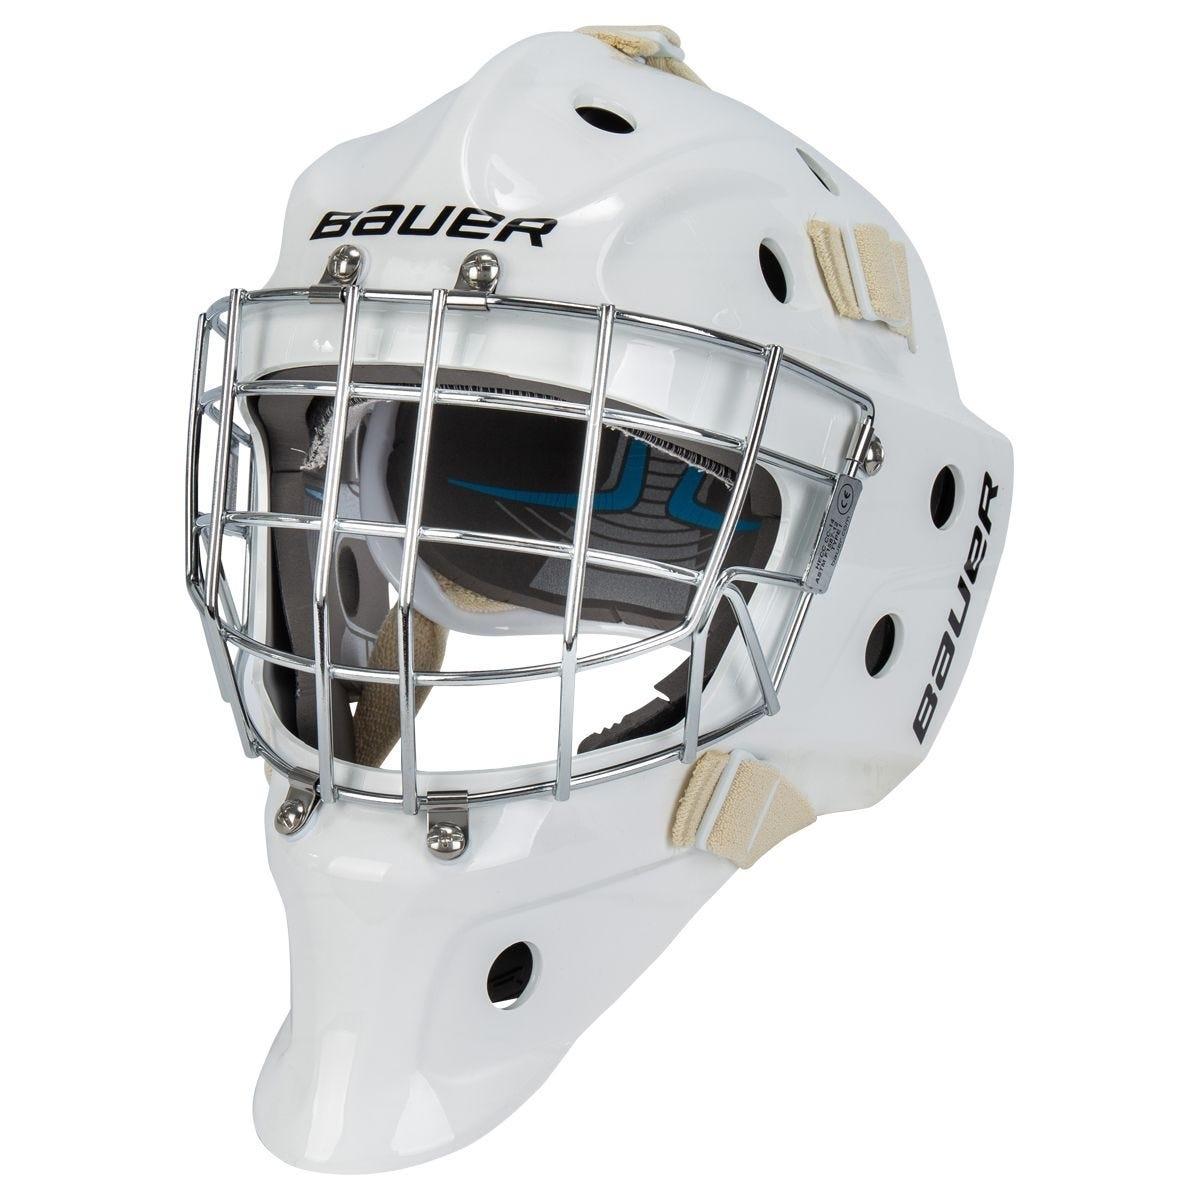 Bauer 930 Sr. Certified Goalie Maskproduct zoom image #1